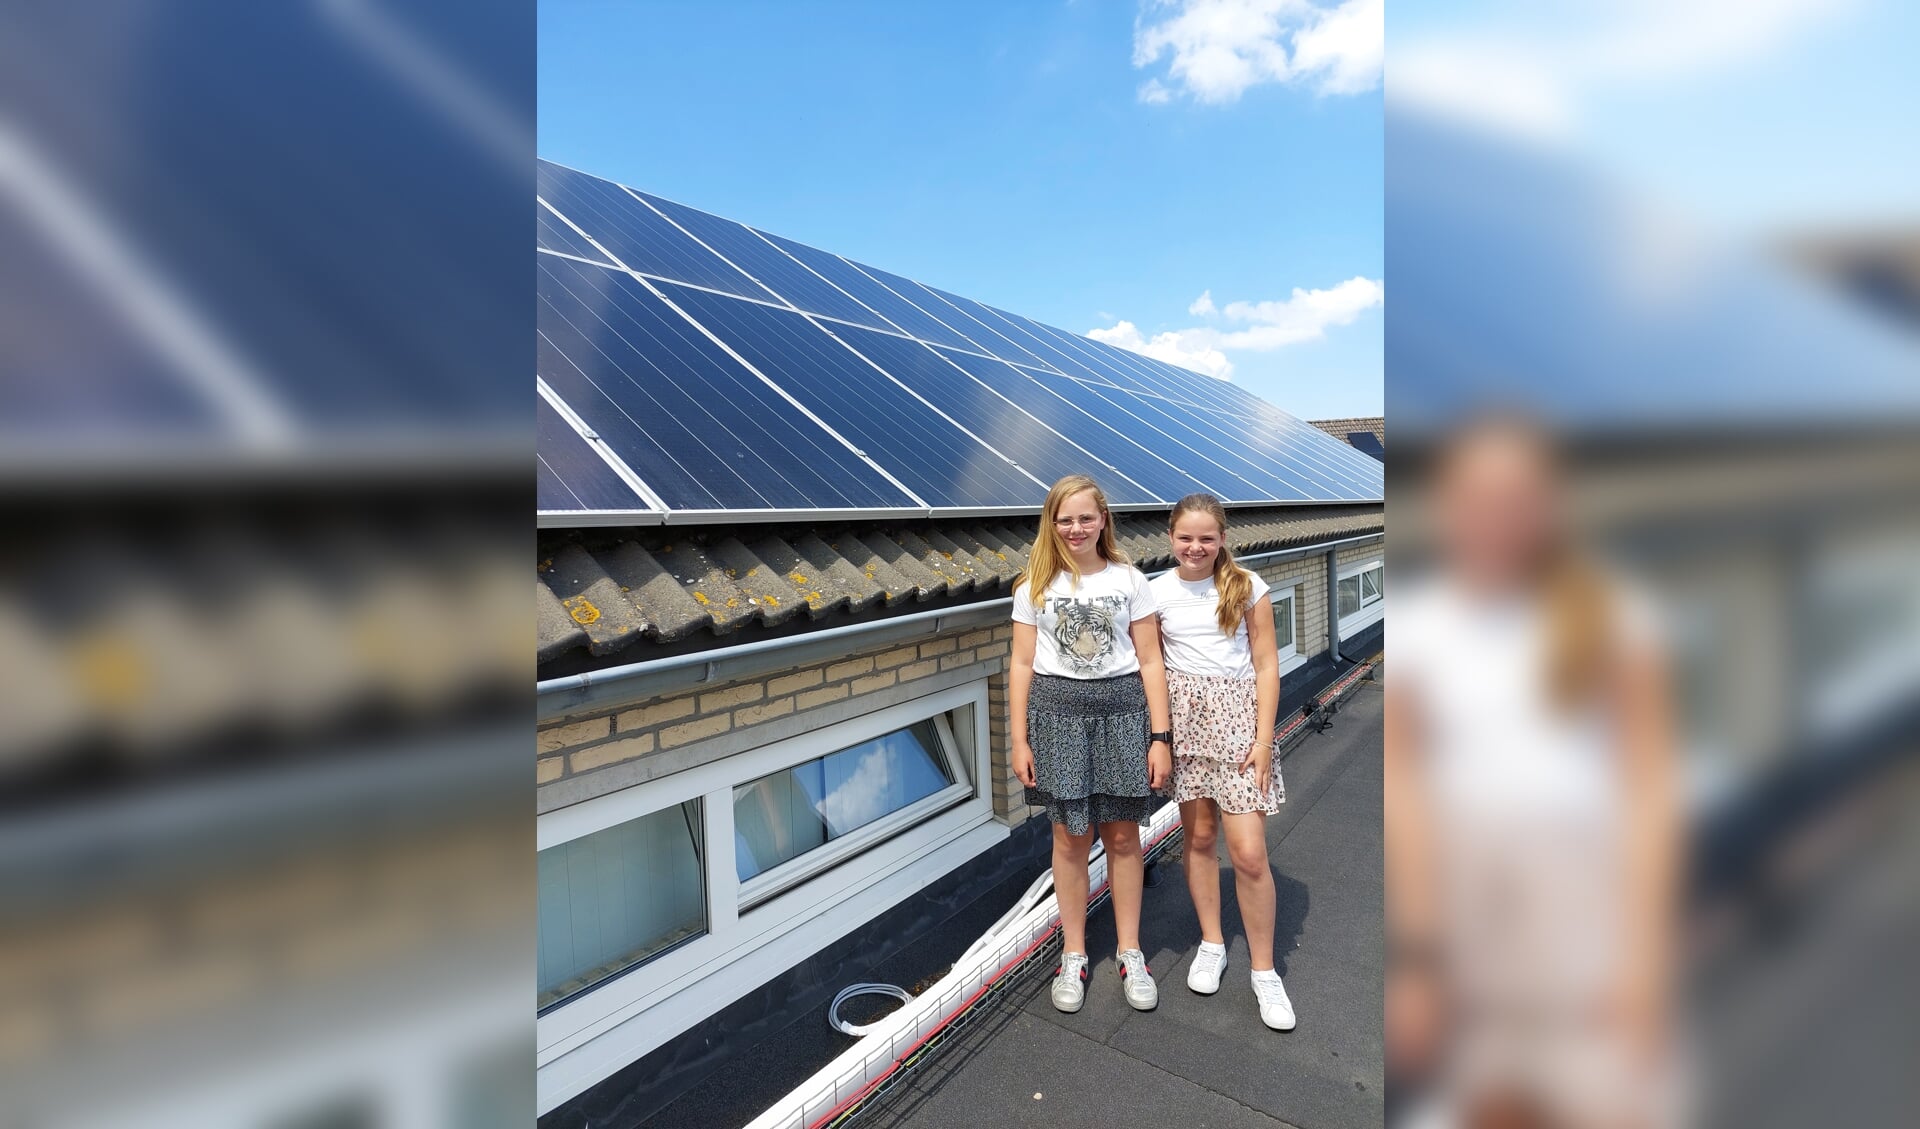 Corlinde (l) en Annelize laten op het dak van hun school de zonnepanelen zien.